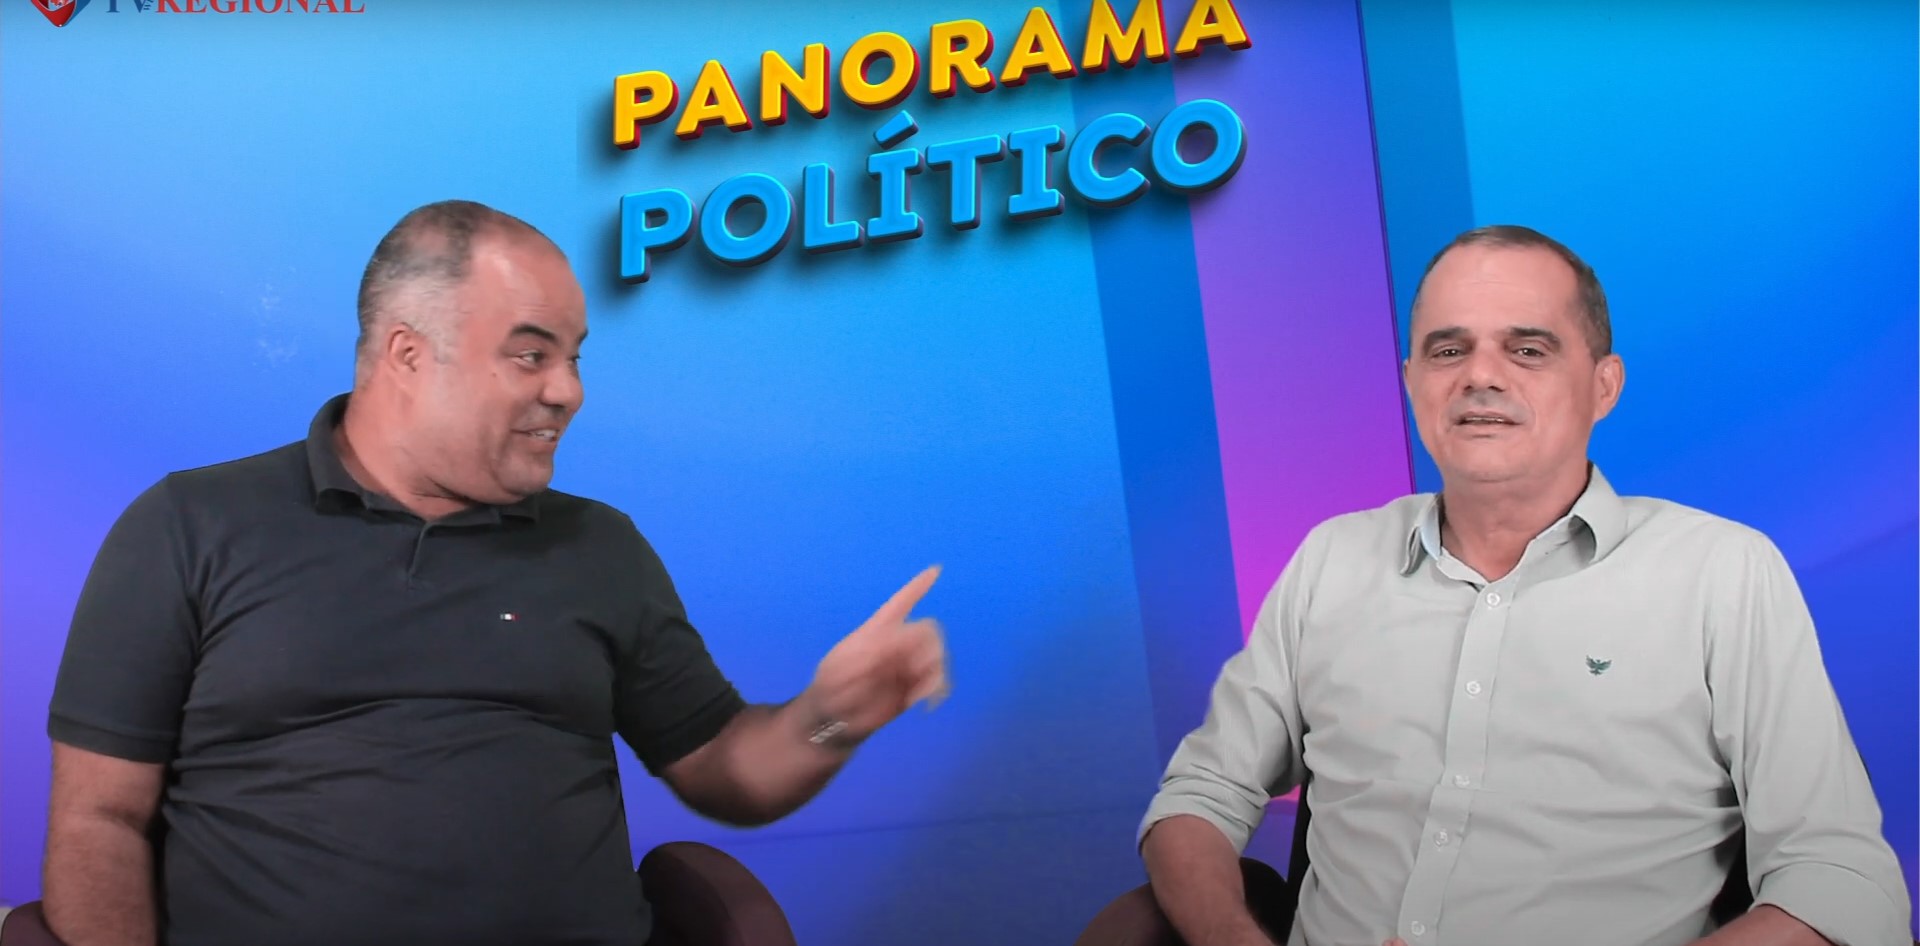 Panorama Político com Jaime Cicero Amador Ferreira (Kiko) - Servidor Público